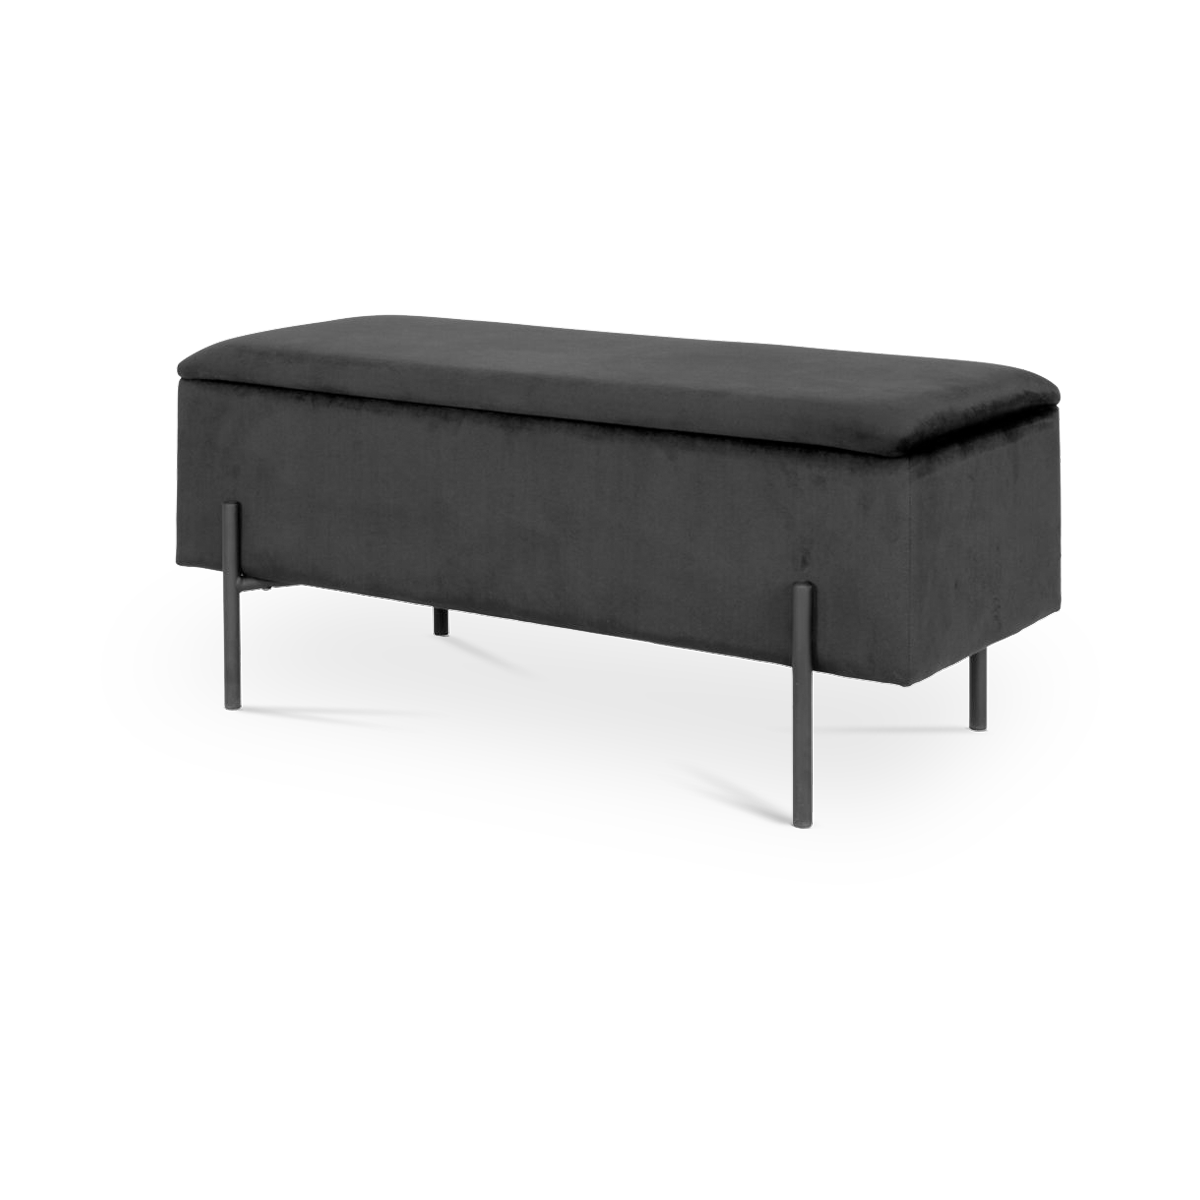 Marlou velvet bankje met opbergruimte zwart - 95 x 46 cm